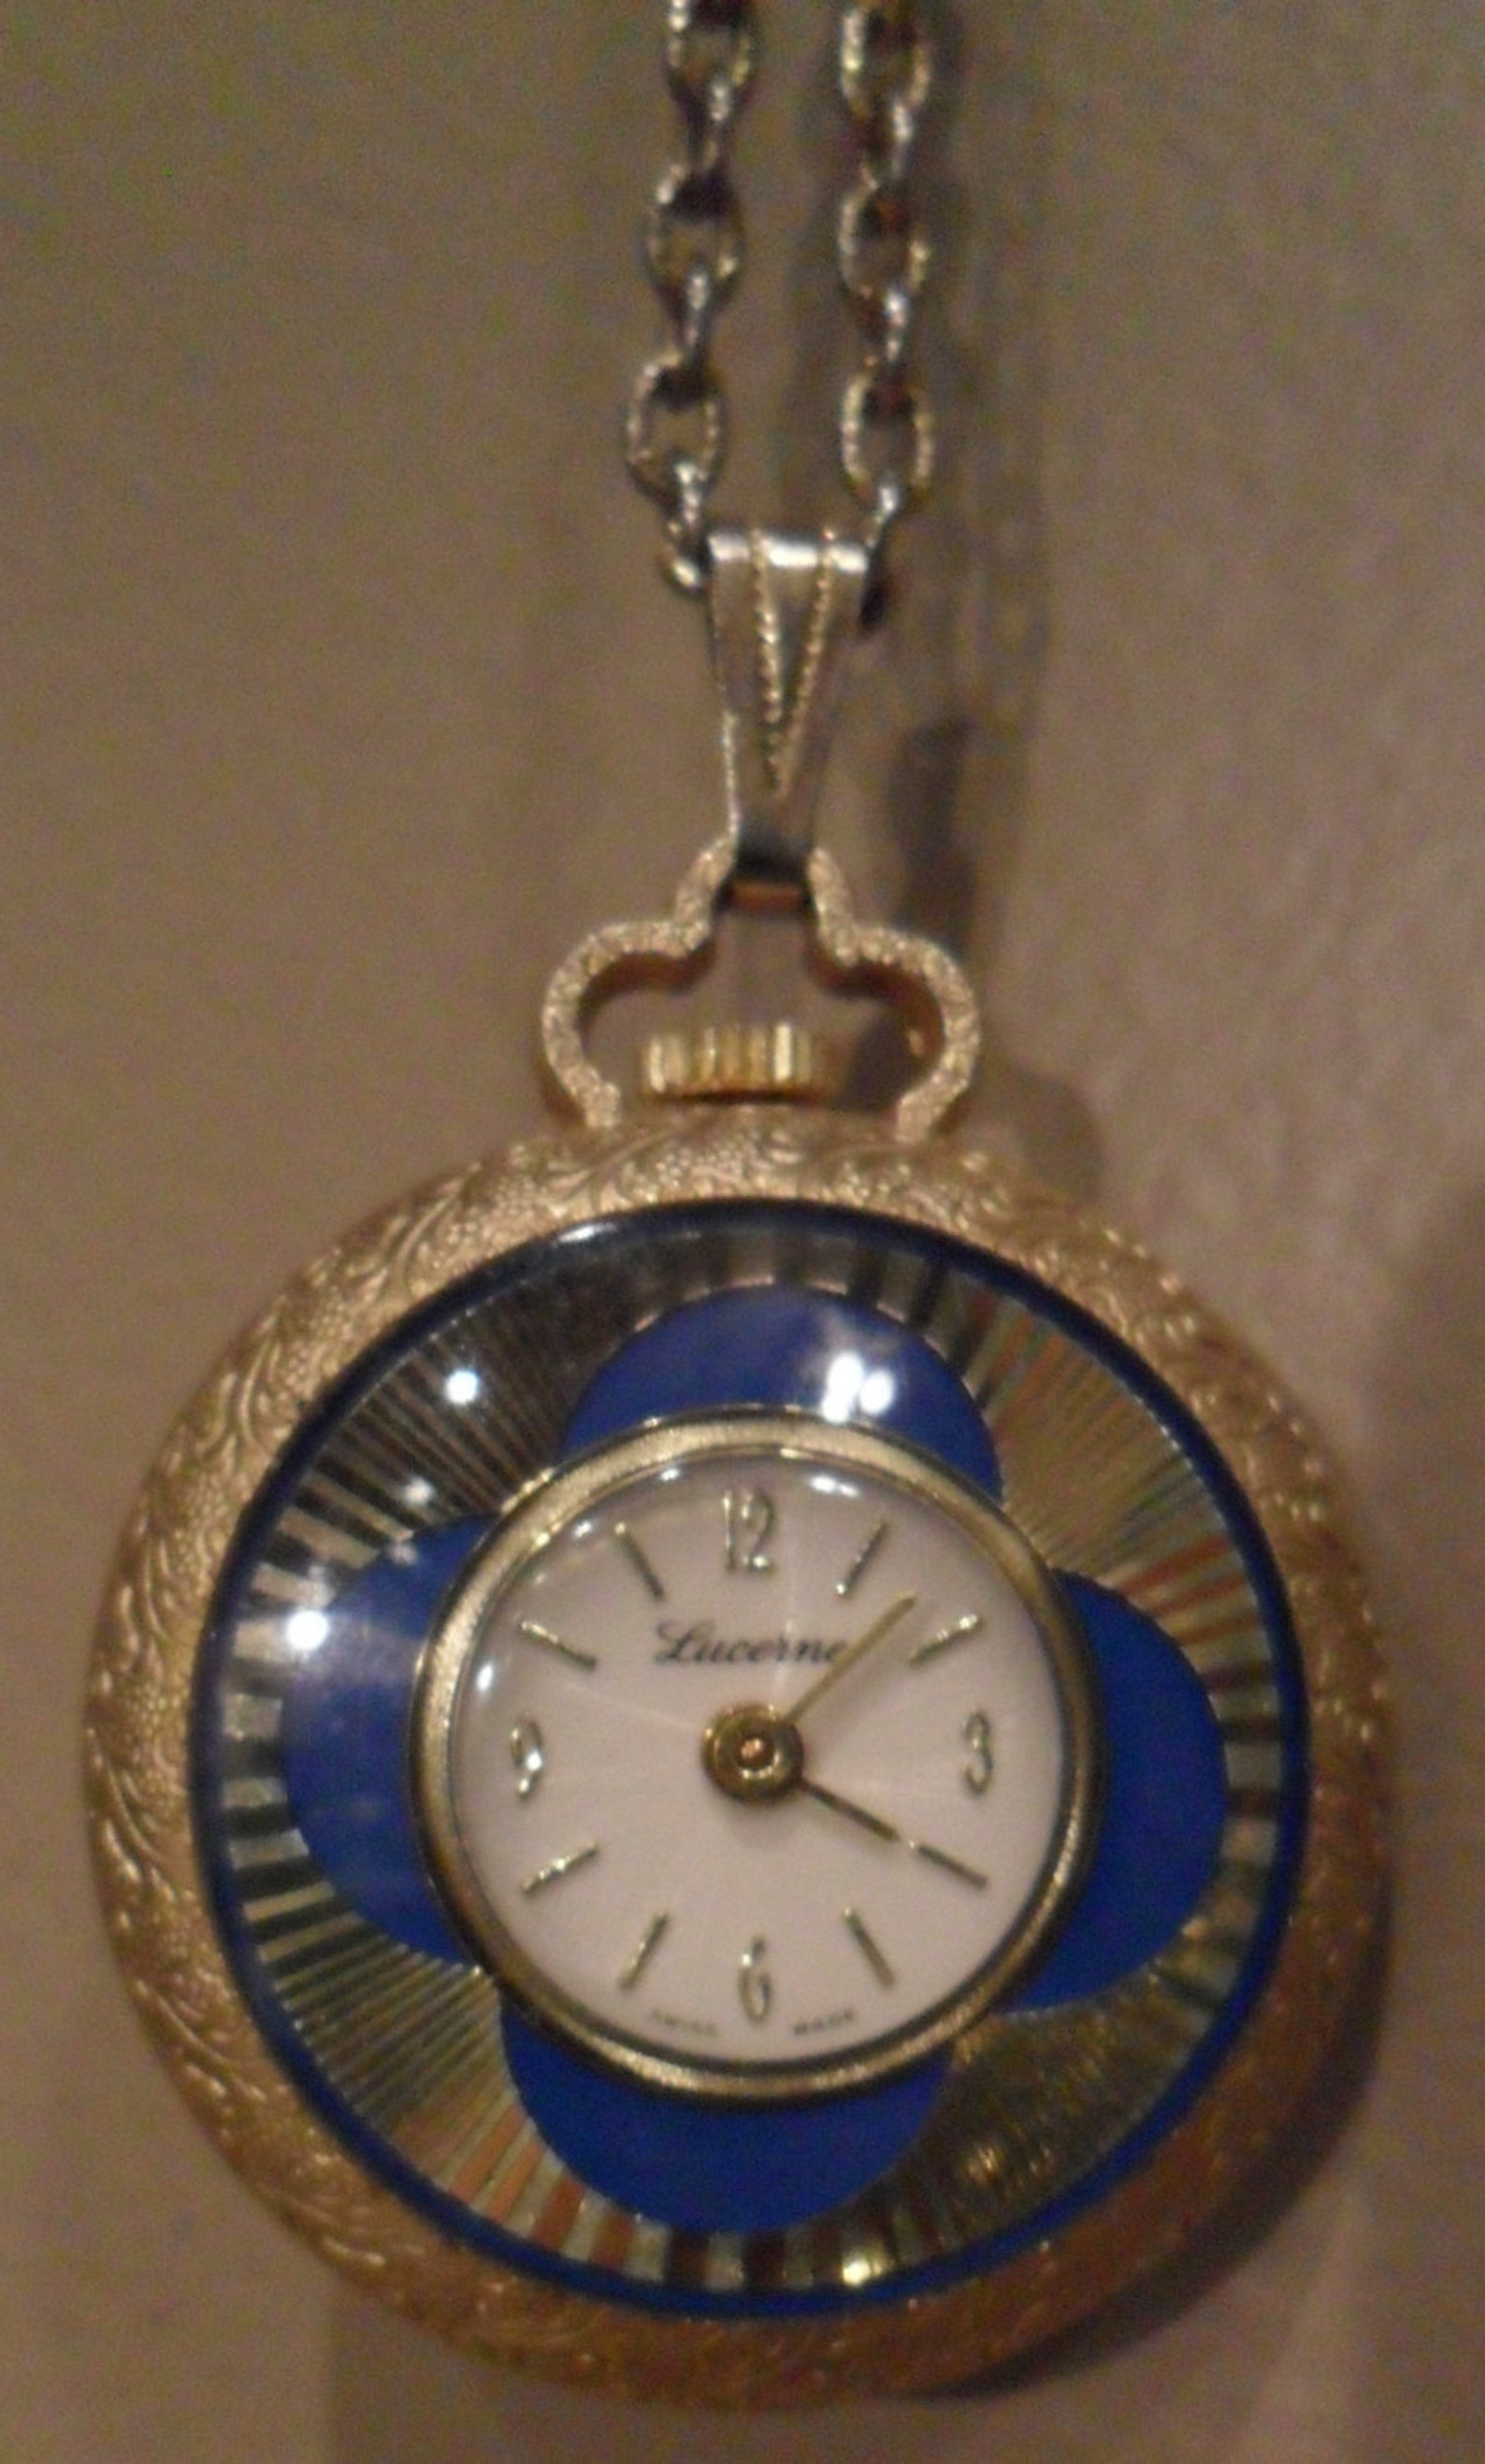 LUCERNE SWISS MADE Pocket Watch/pendant necklace. Lucerne | Etsy